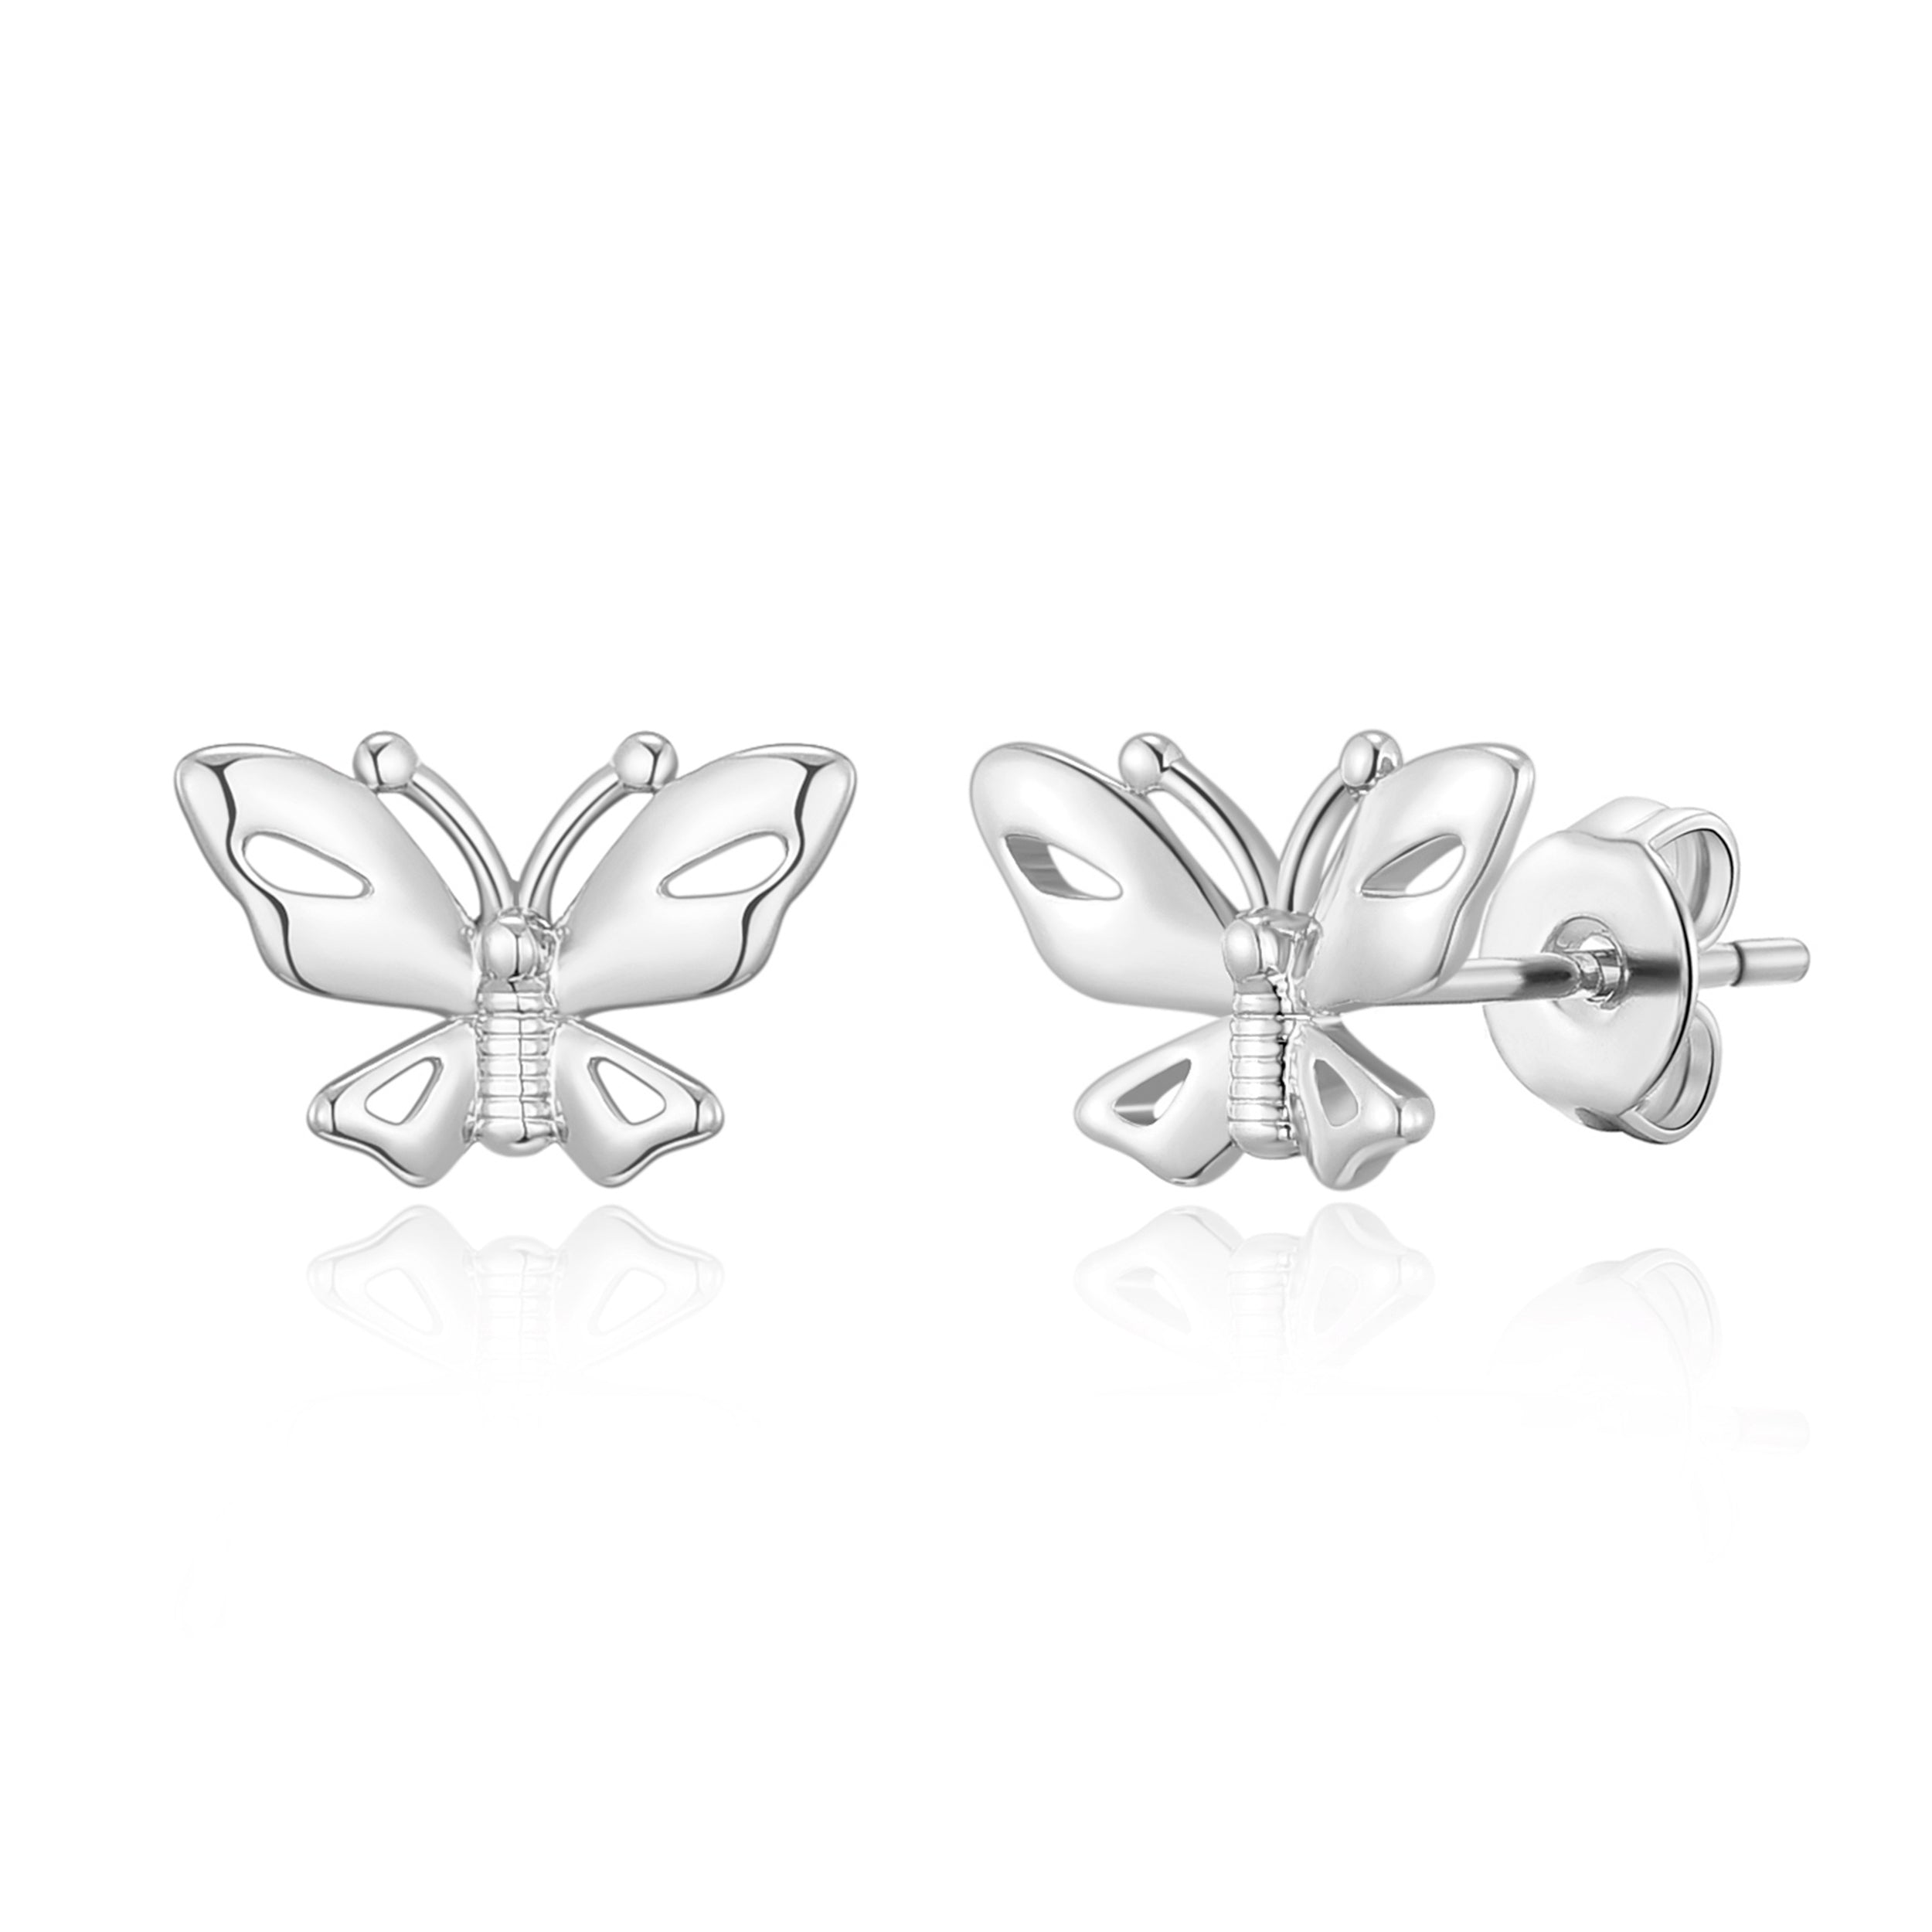 Silver Plated Butterfly Stud Earrings by Philip Jones Jewellery